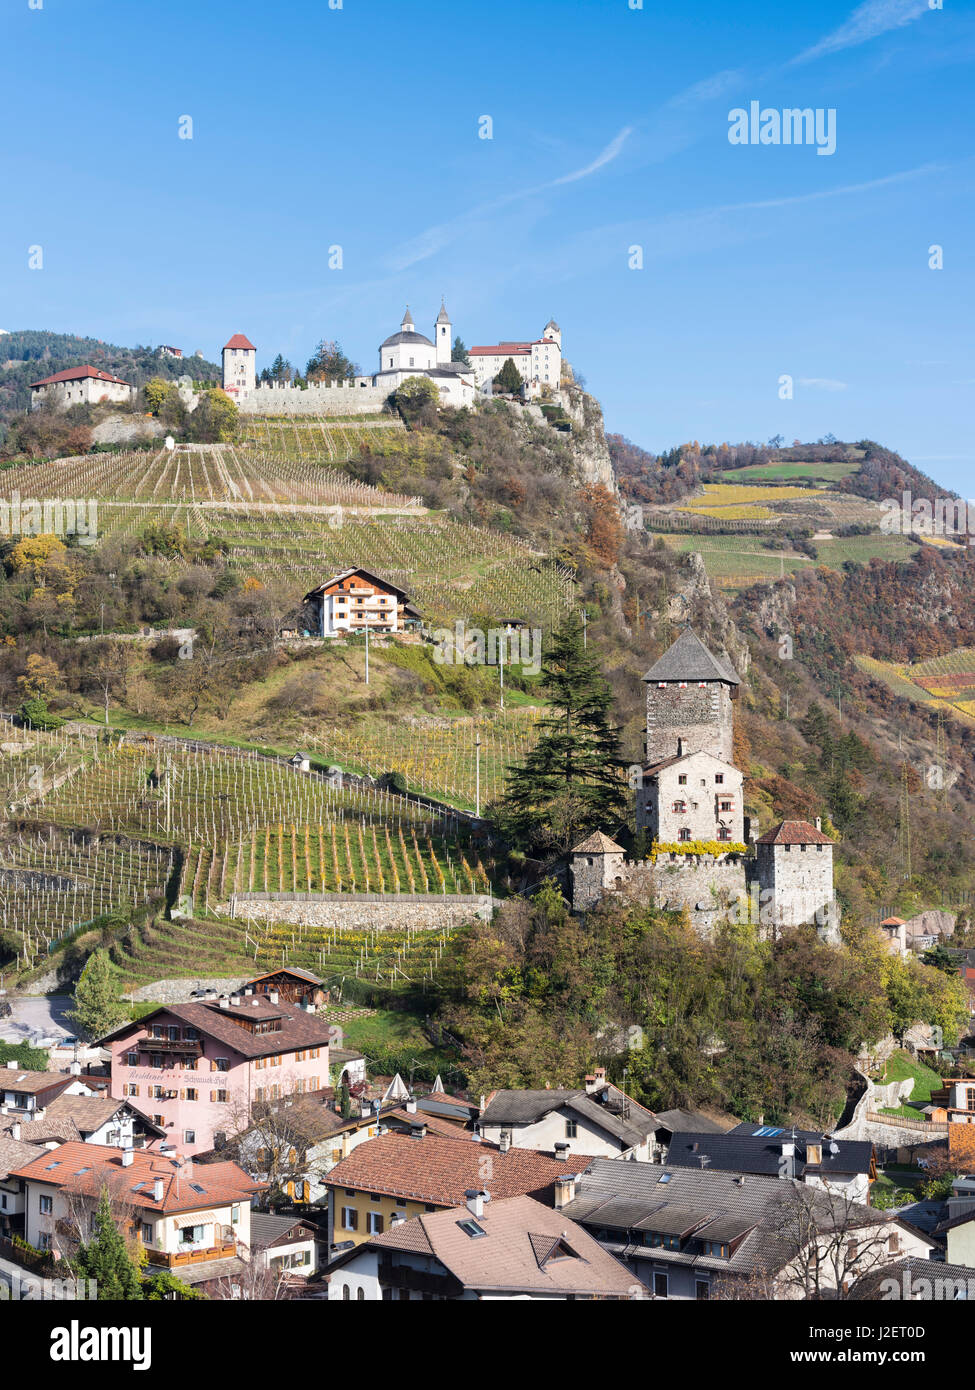 Saeben et monastère Branzoll Château près de Klausen dans la Valle Isarco au cours de l'automne. L'Europe centrale, le Tyrol du Sud, Italie (grand format formats disponibles) Banque D'Images